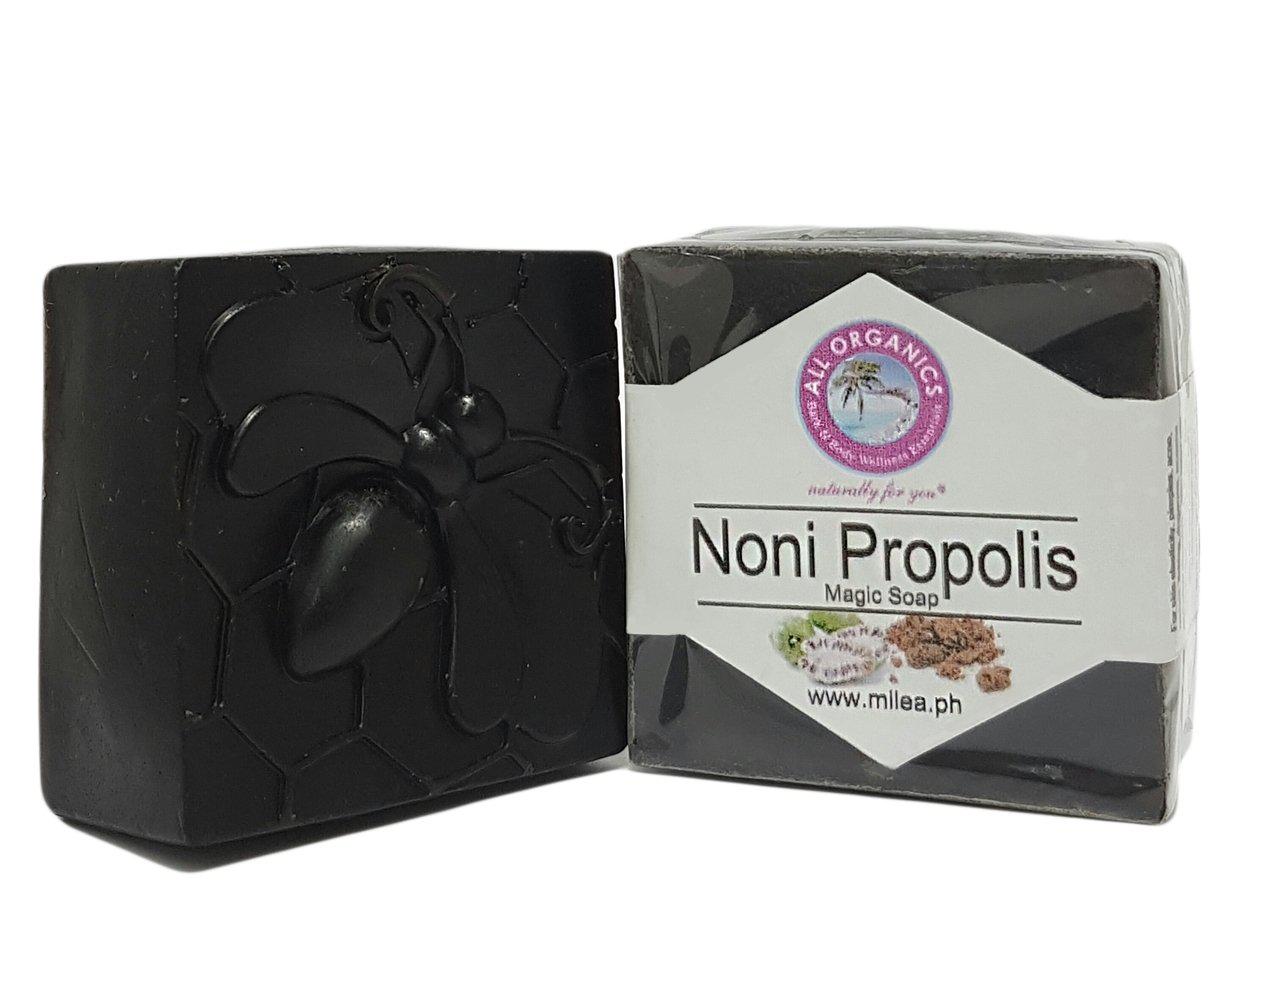 Noni Propolis Magic - Acne Care Soap - Milea All Organics - Philippines